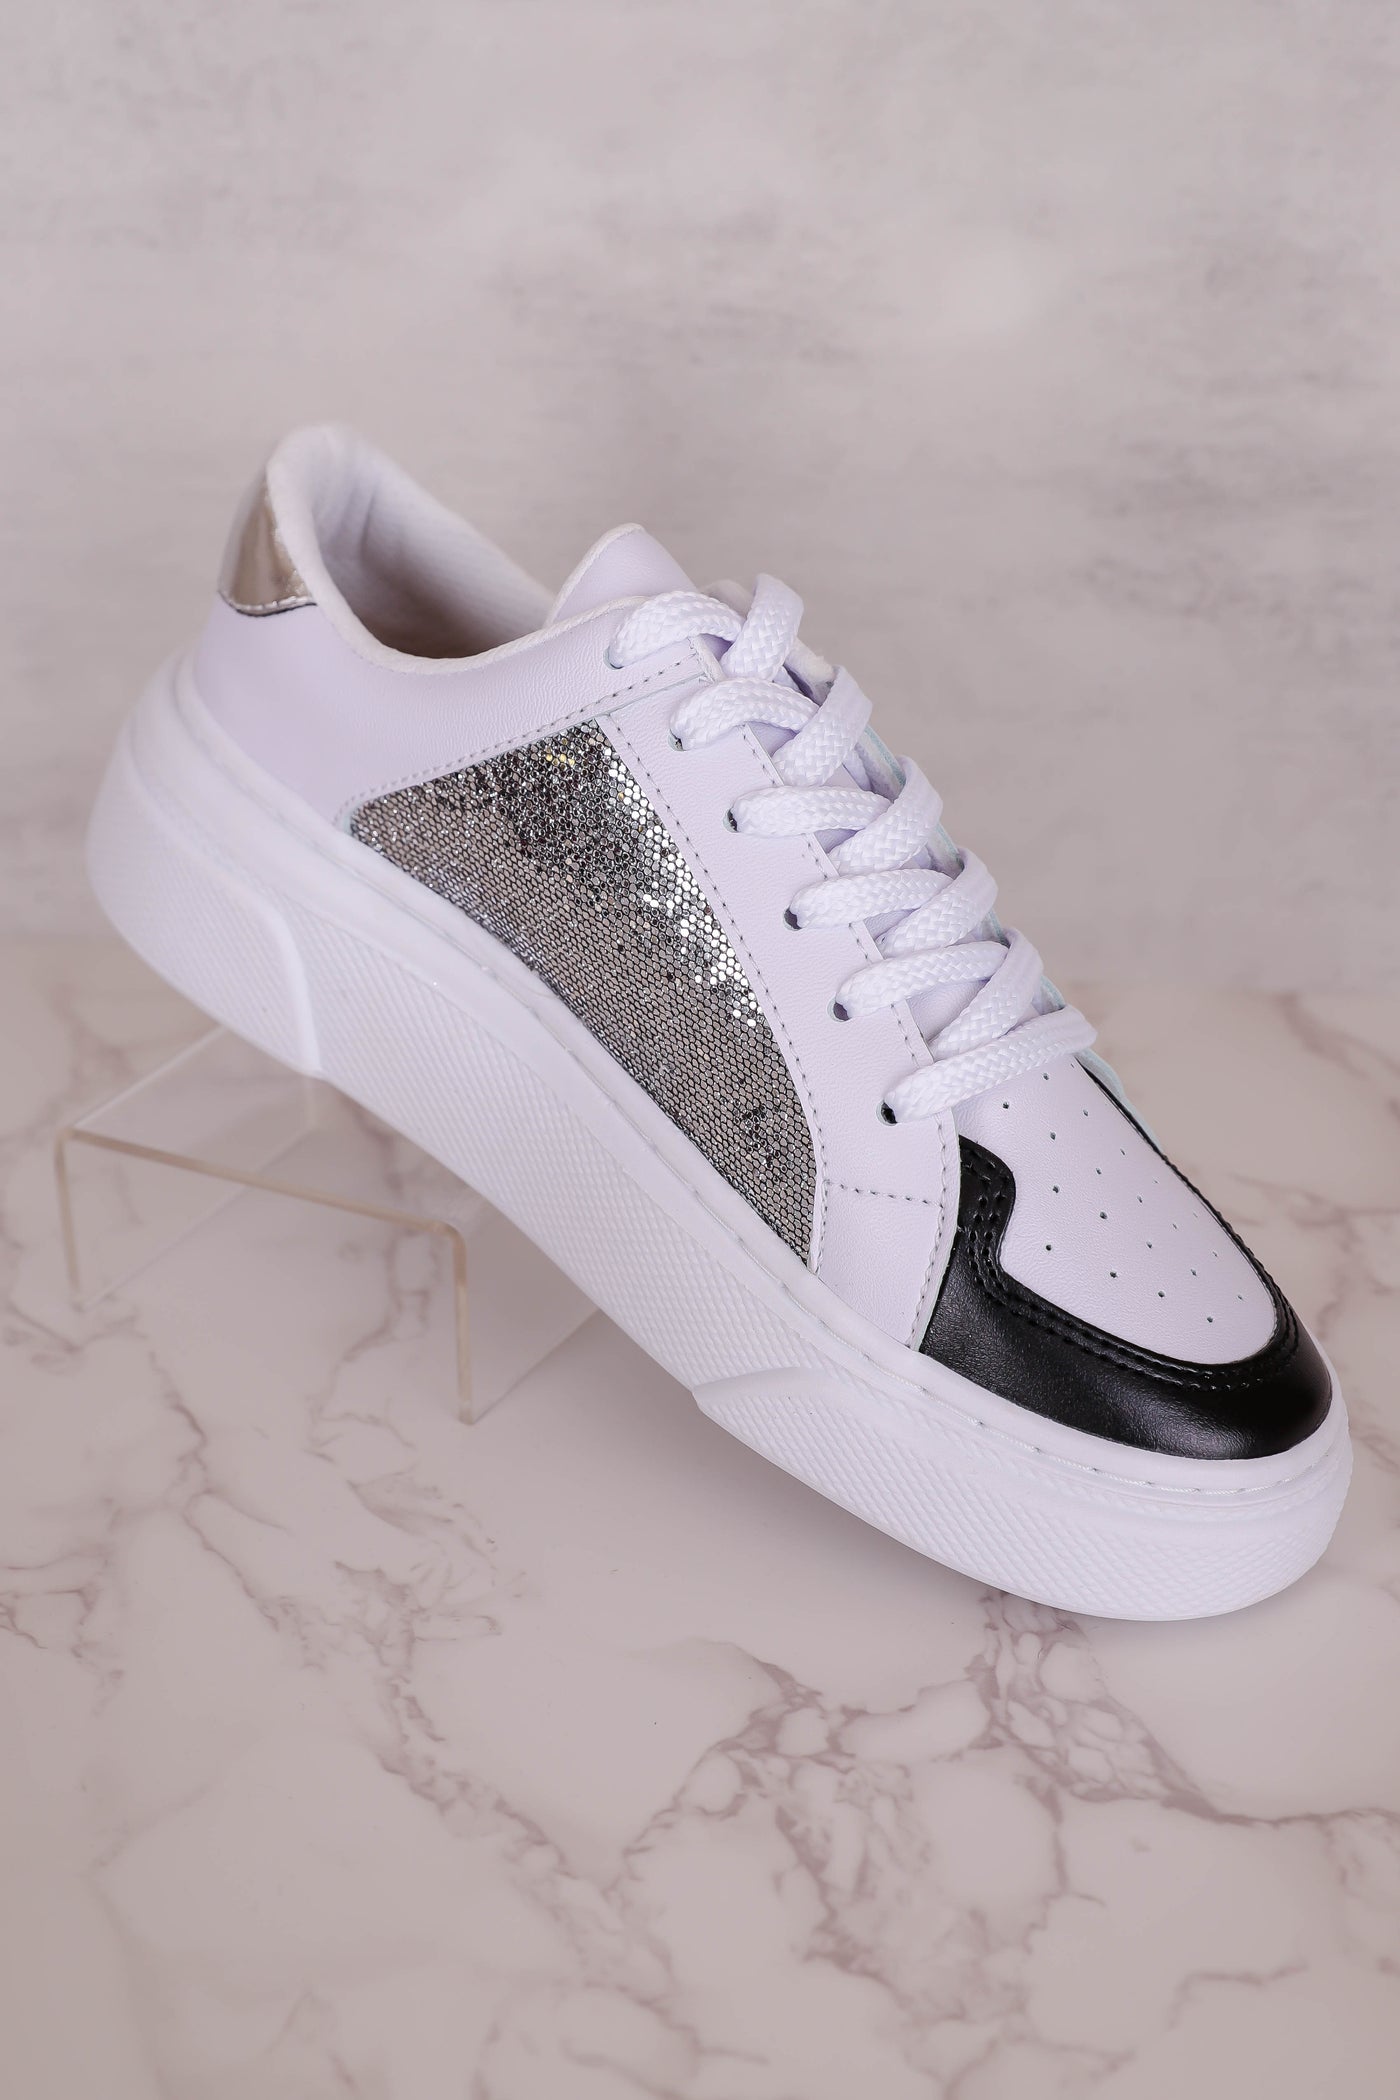 Trendy Star Sneakers- Women's Platform Star Sneakers- Affordable Star Sneakers